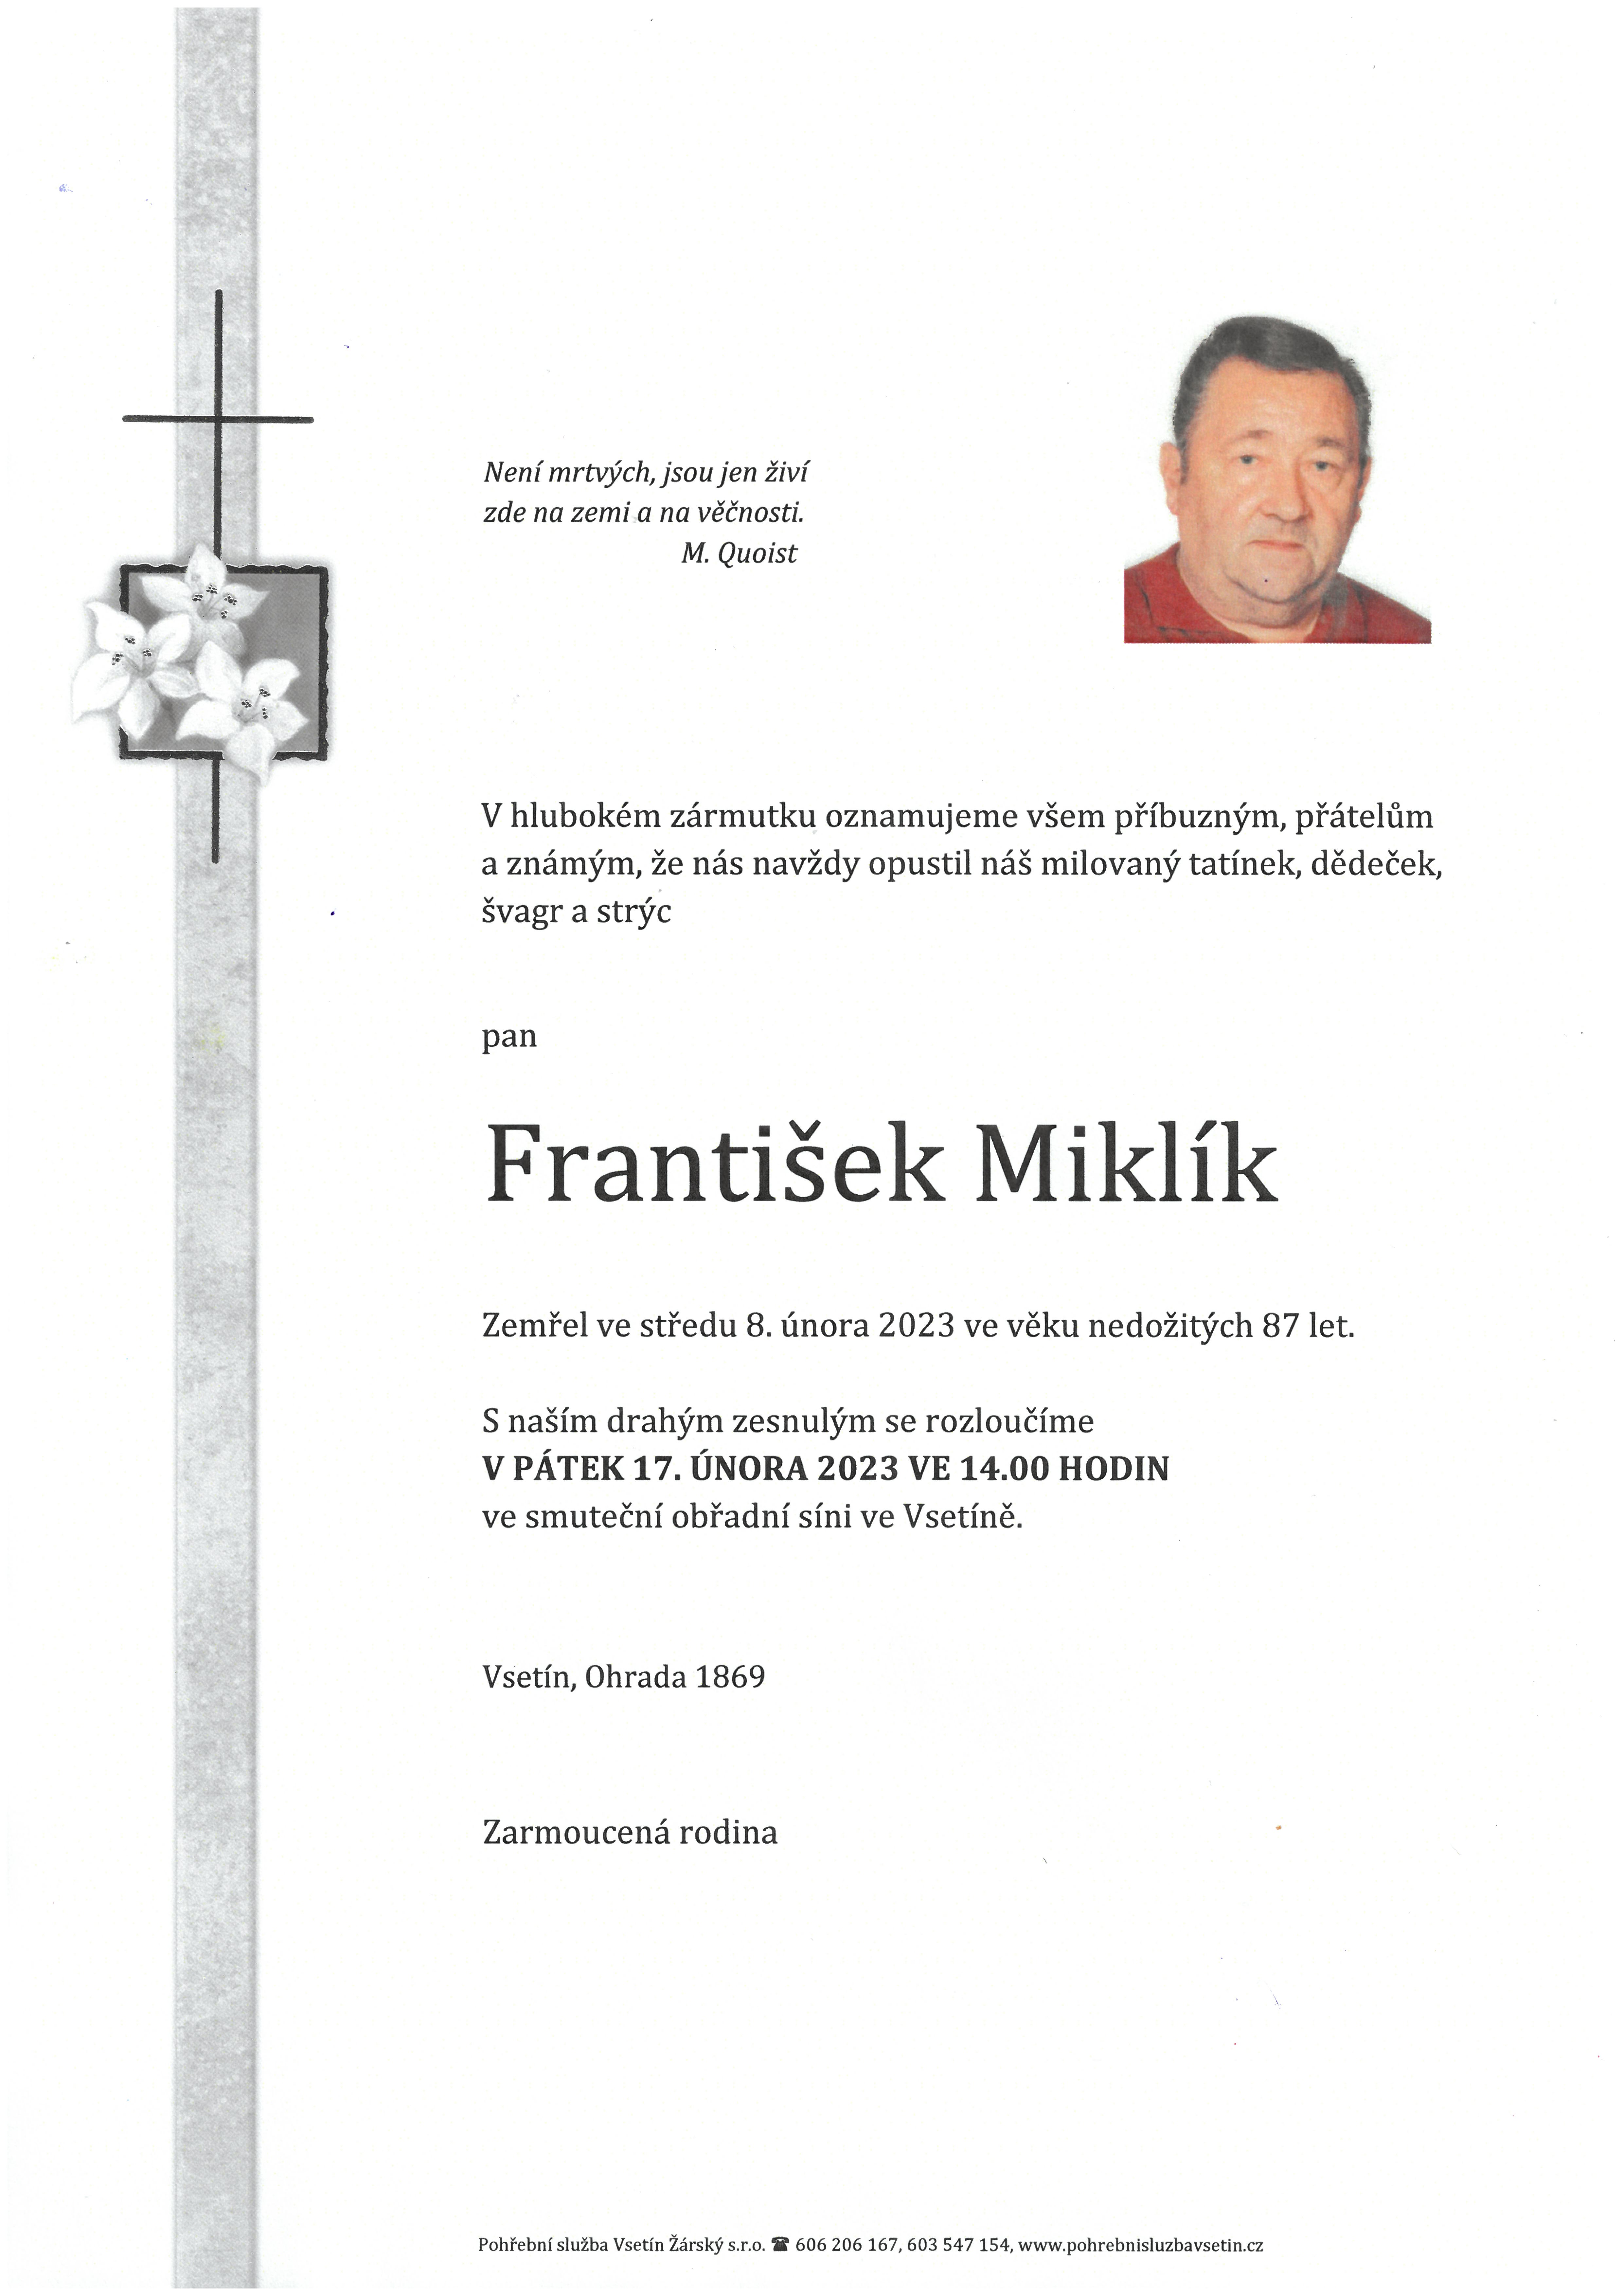 František Miklík